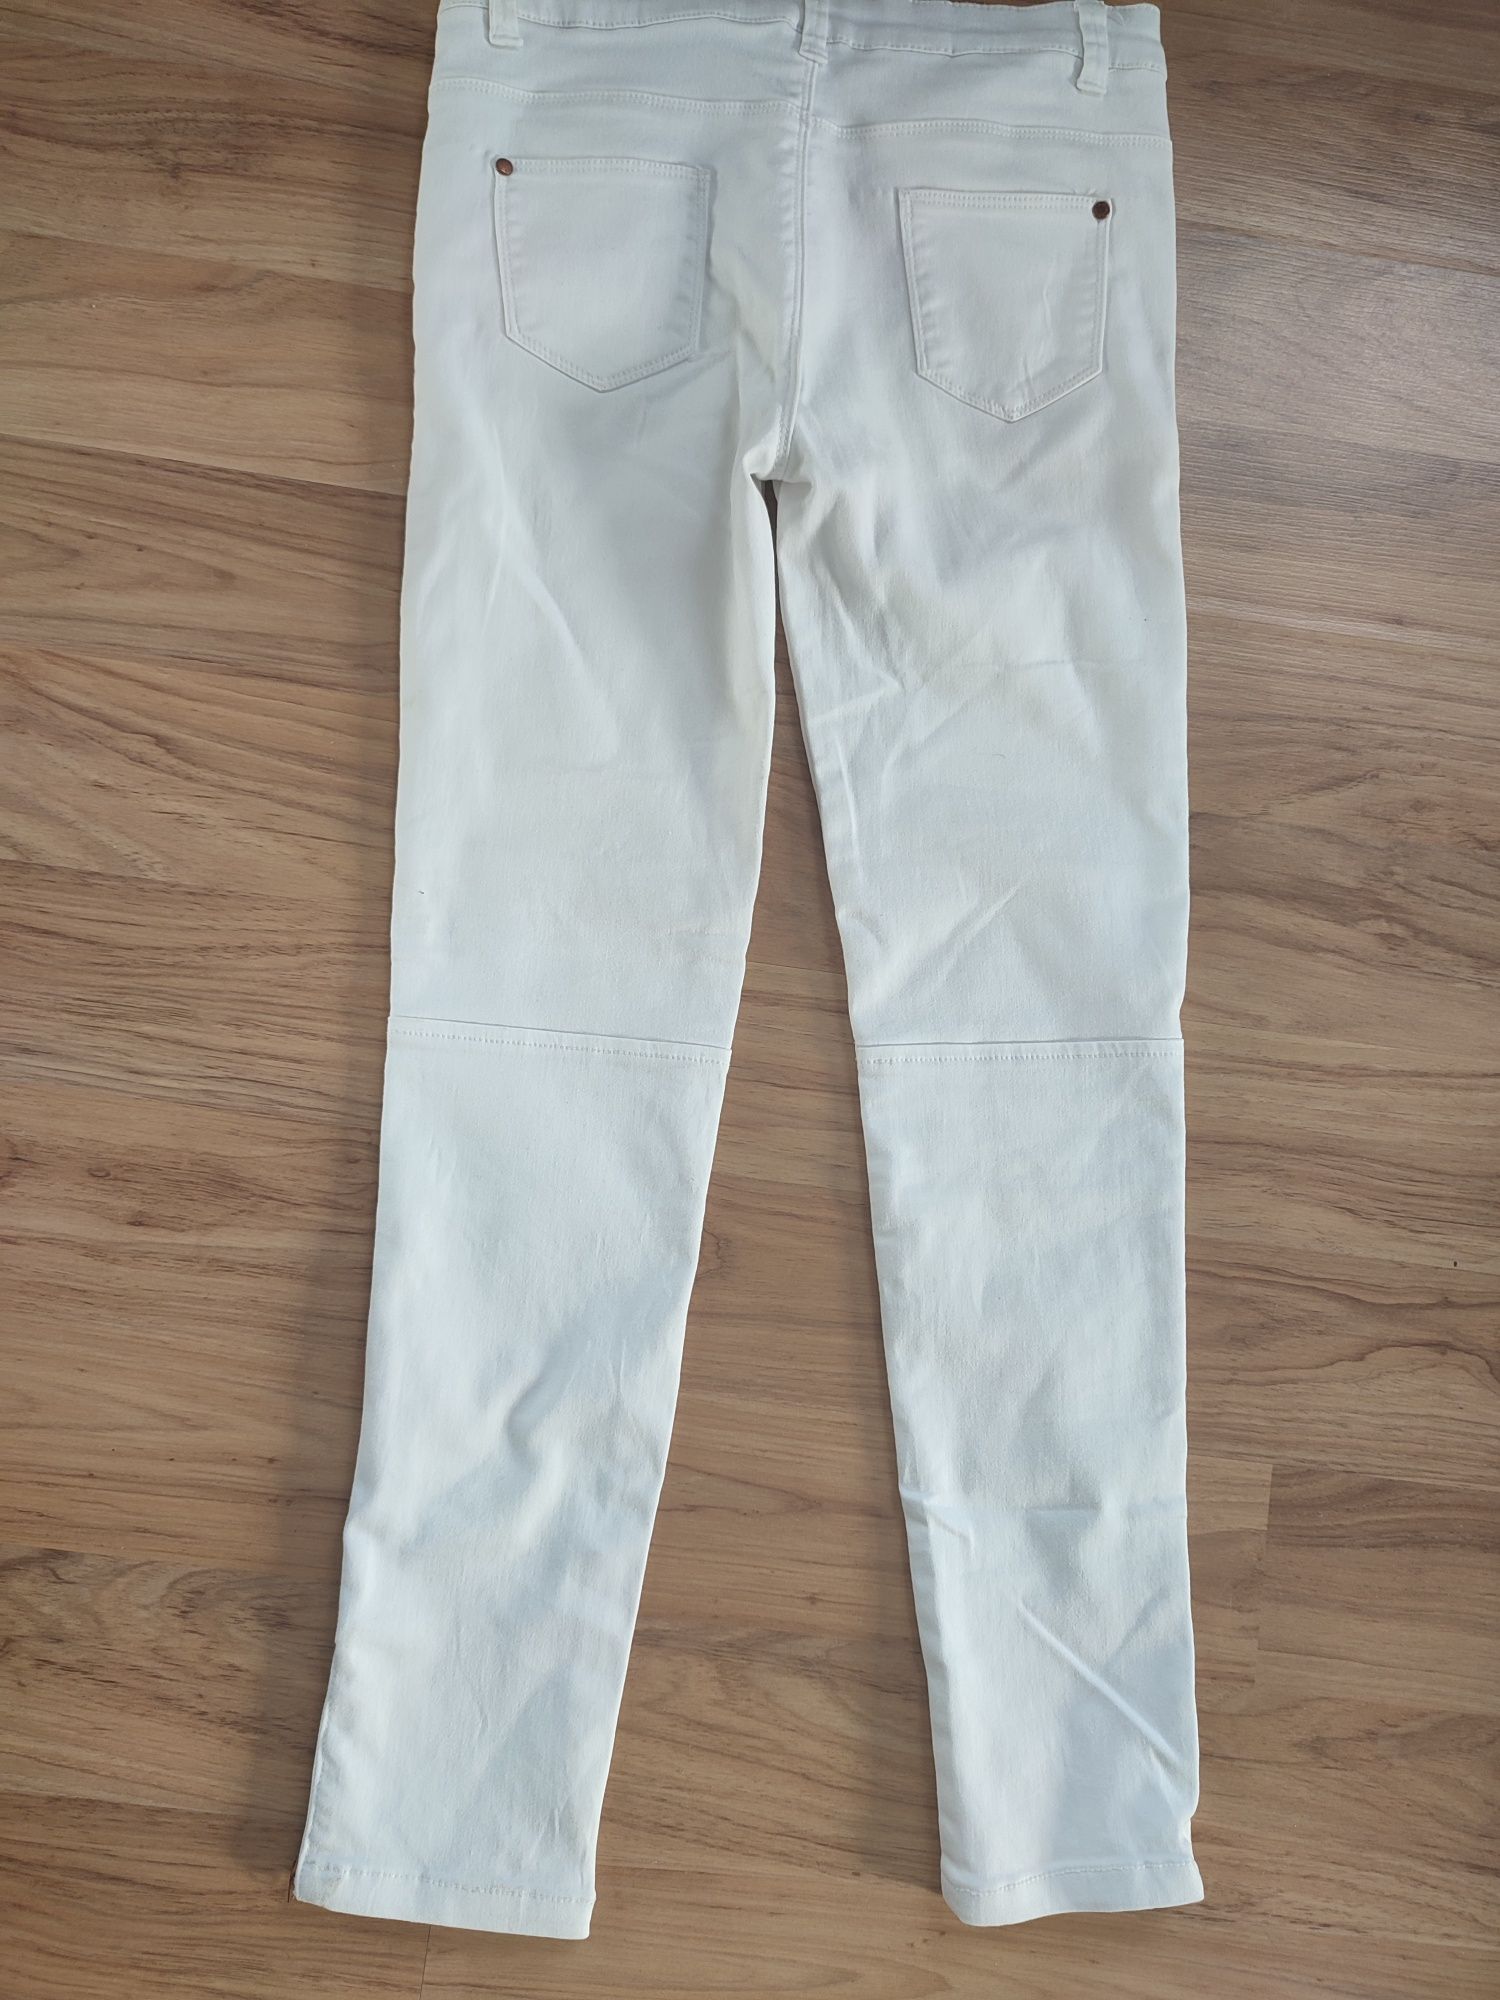 Białe spodnie denim rozpinane skinny xxs xs